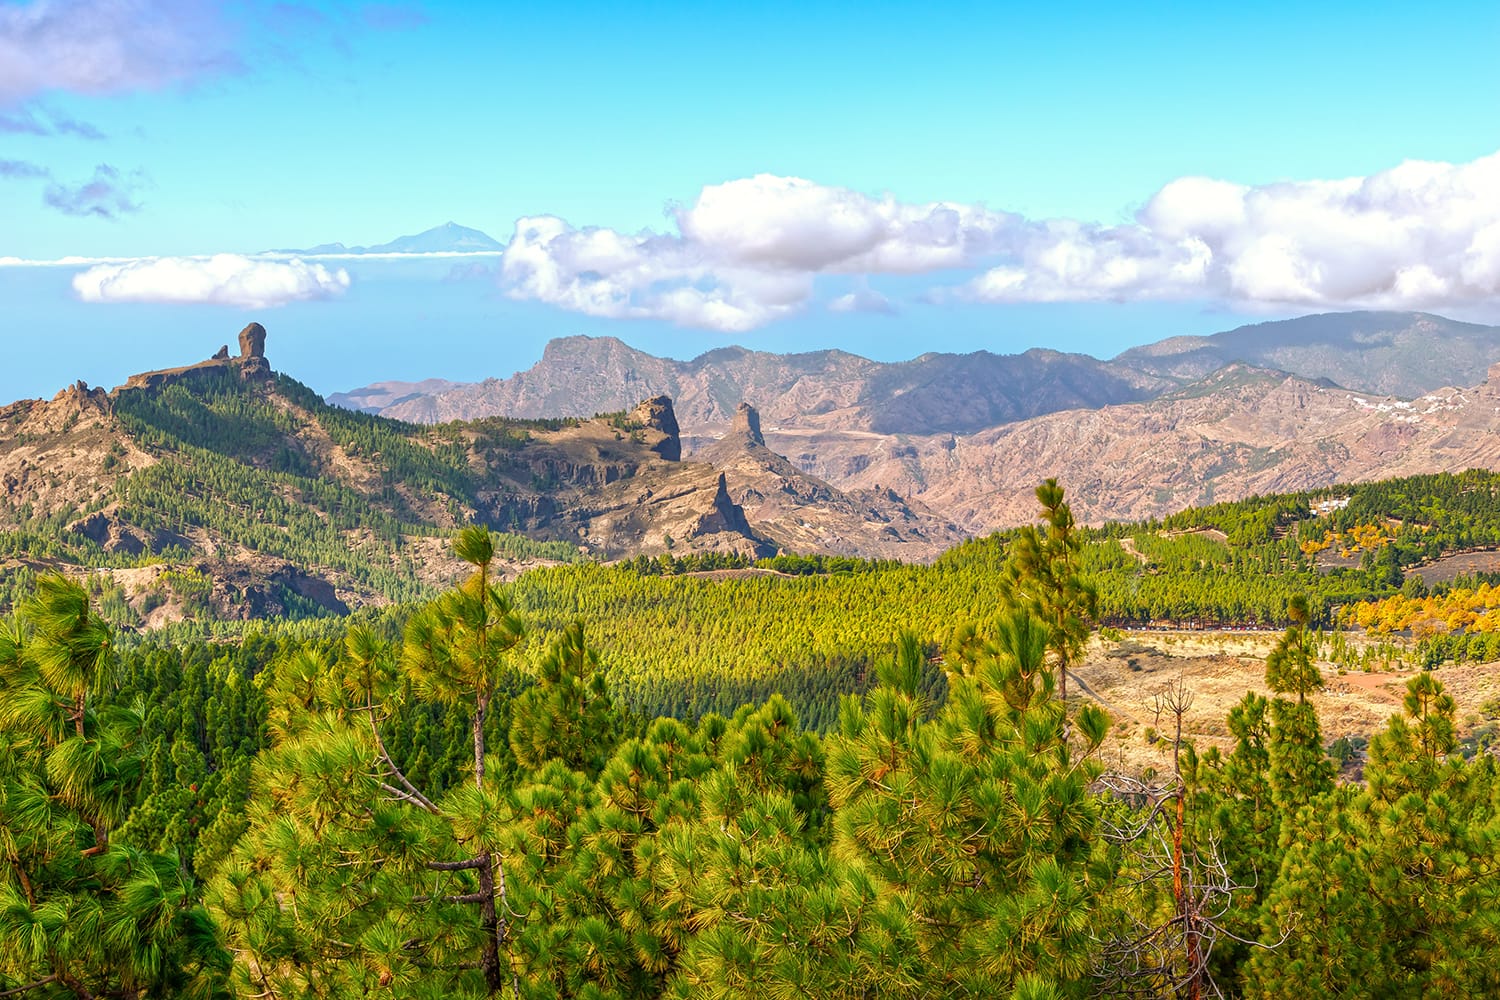 View from Pico de las Nieves in Gran Canaria, Spain